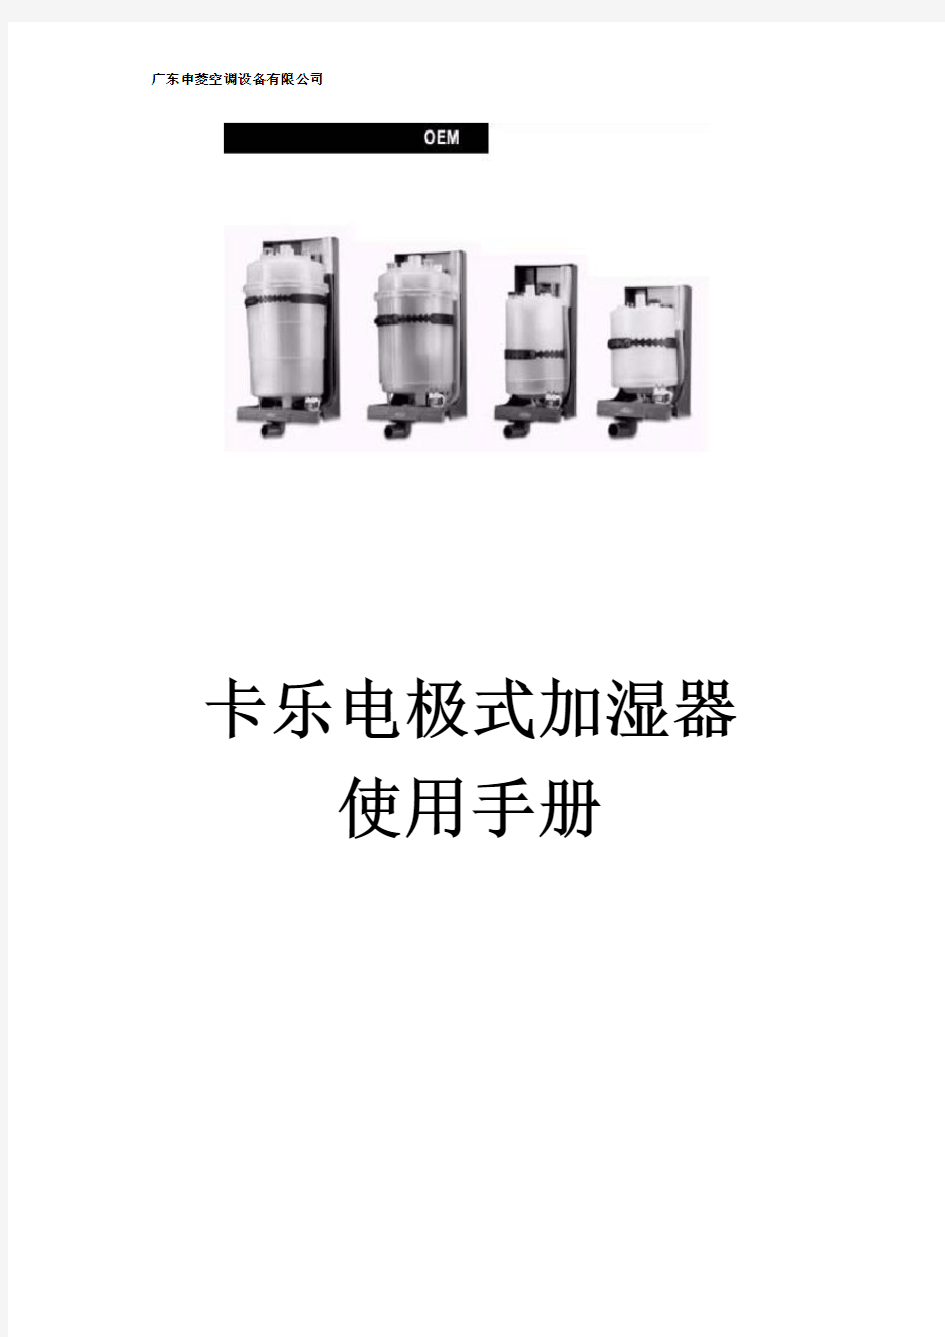 卡乐电极式加湿器使用手册for申菱5.31